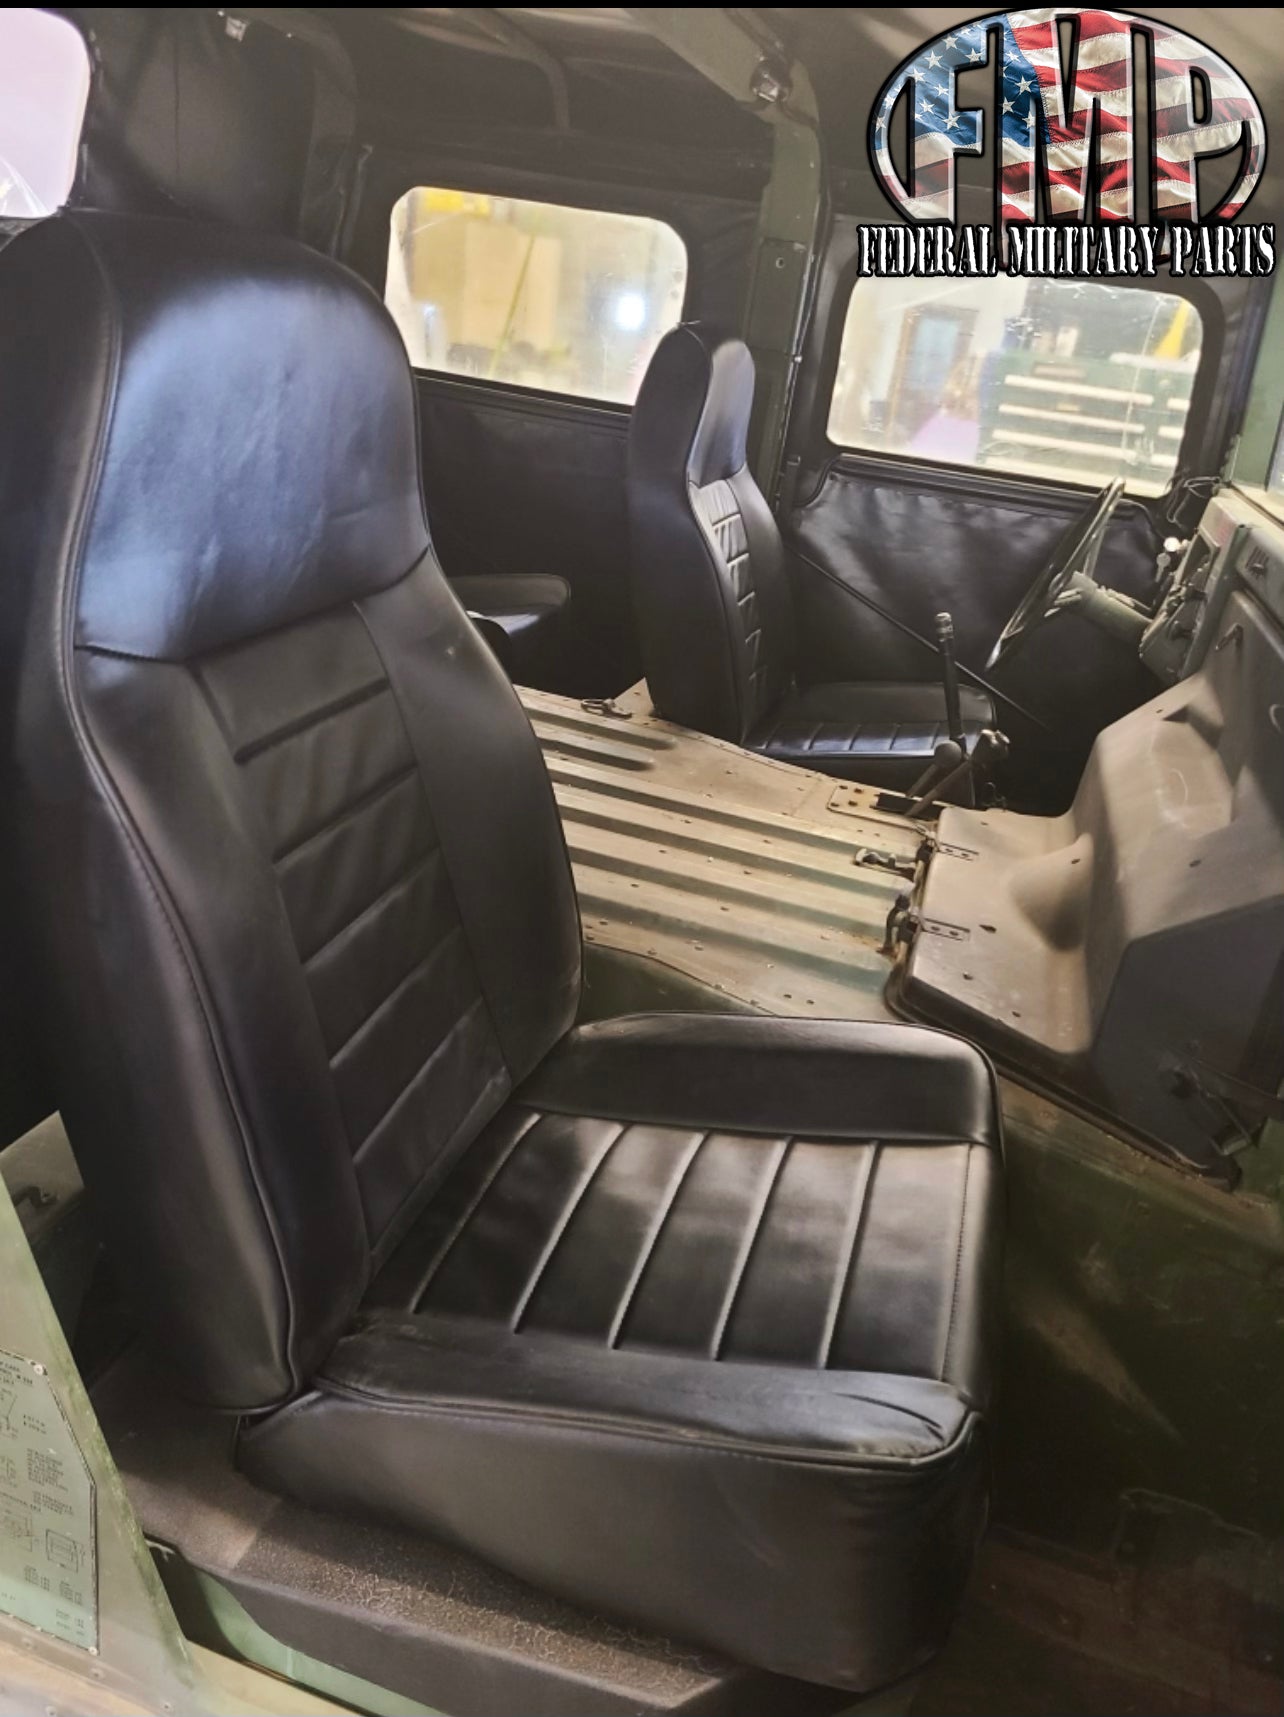 New Humvee Seat Sièges HMMWV pour votre véhicule militaire - Simple, paire ou ensemble de quatre